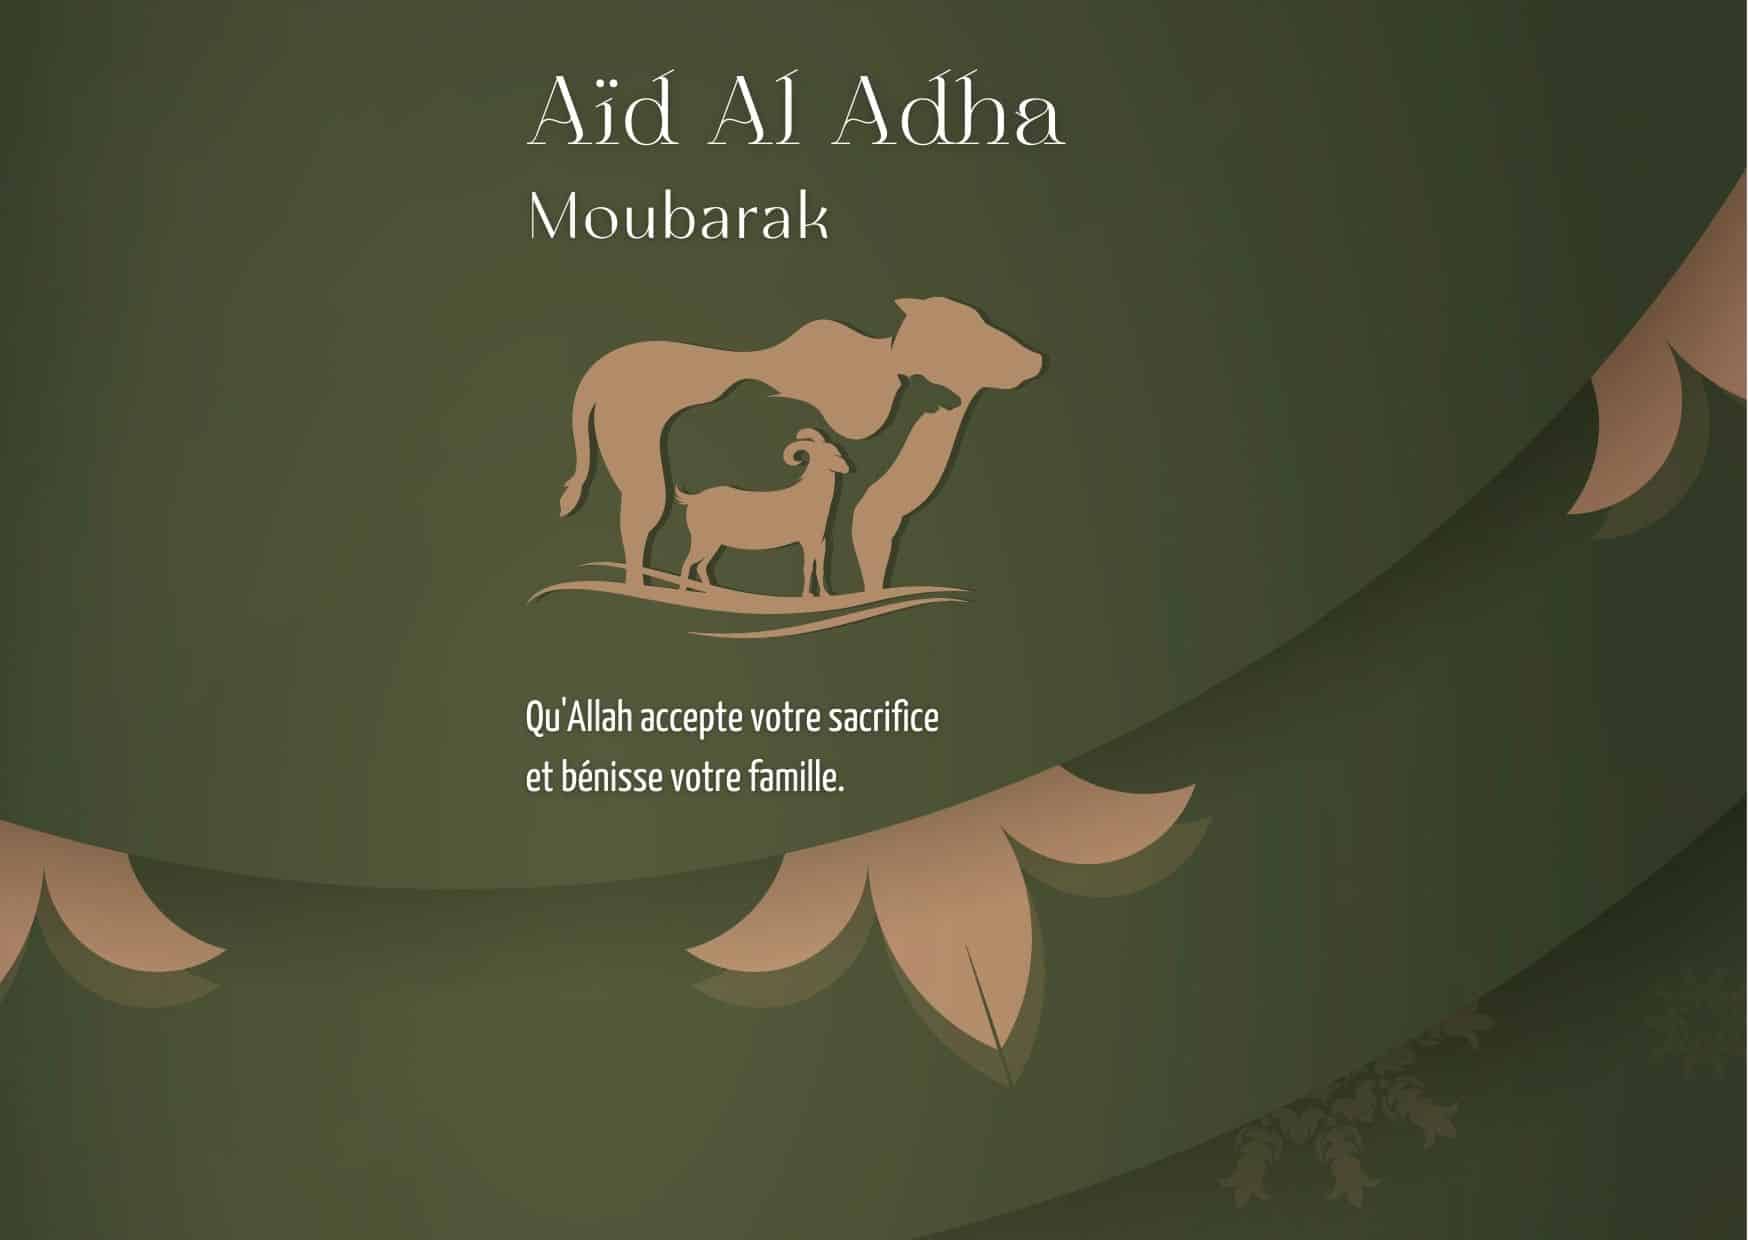 aid el adha moubarek